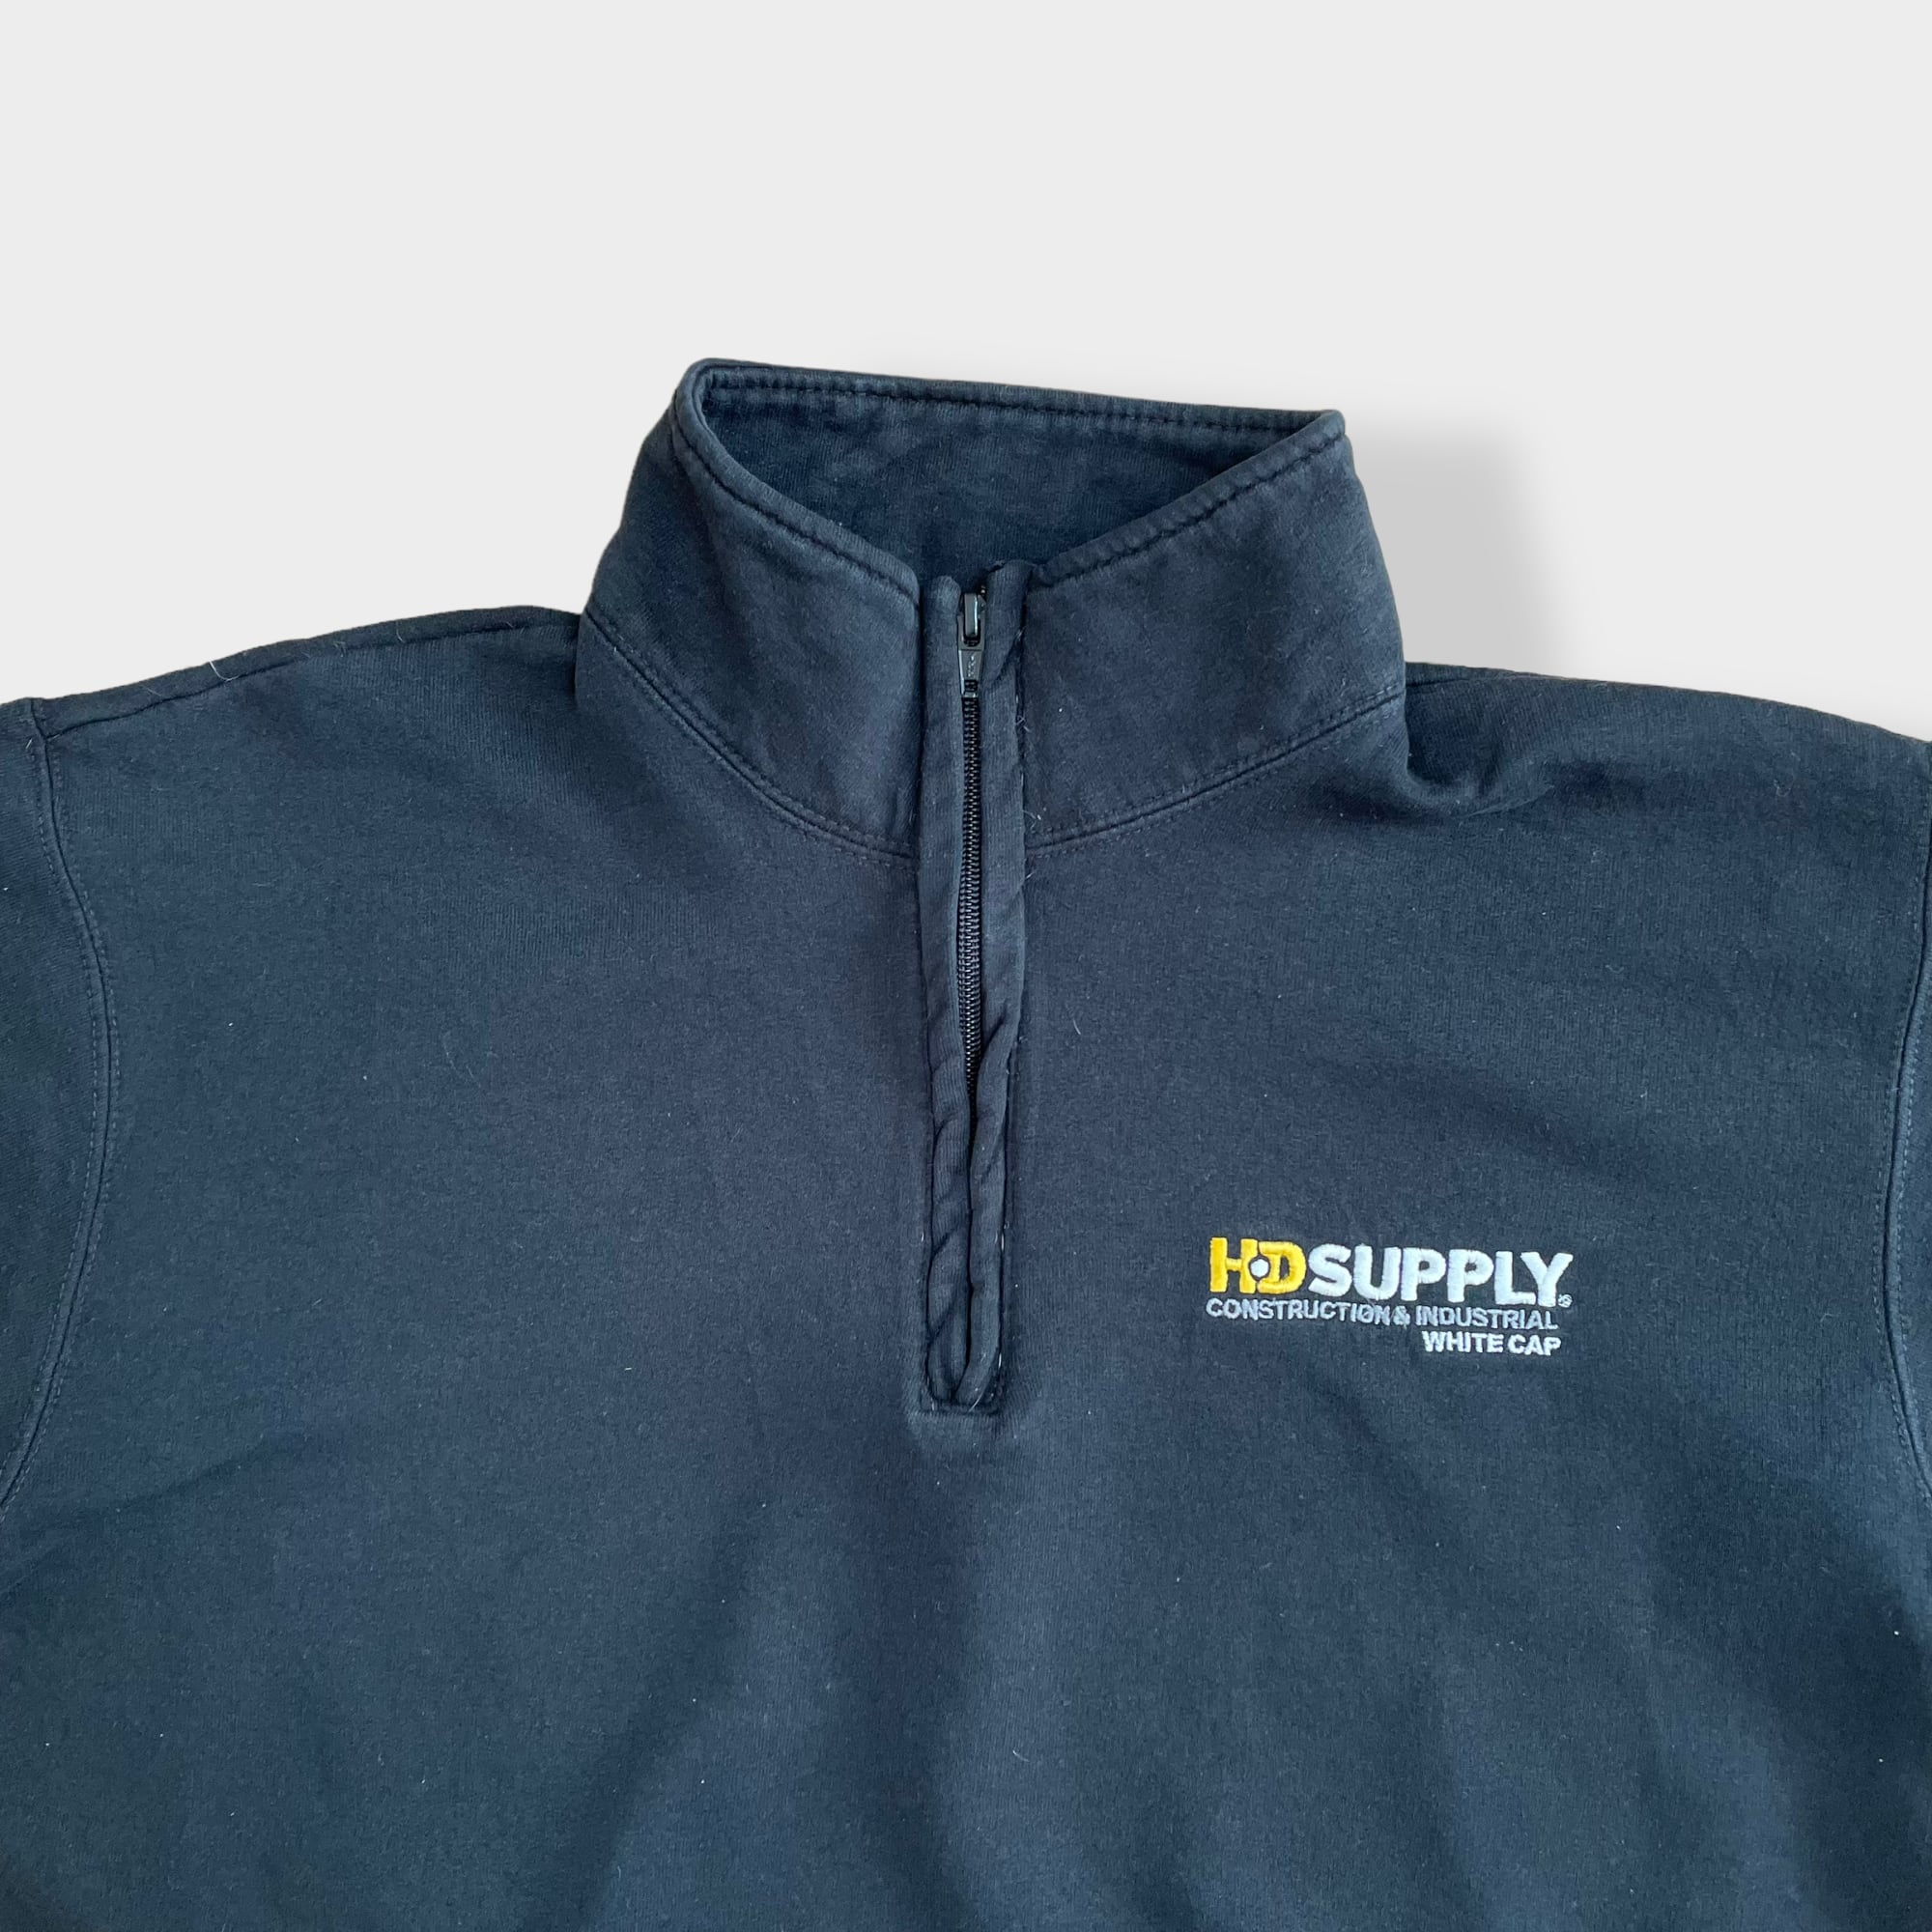 champion】企業系 刺繍ロゴ HD SUPPLY ワンポイント ハーフジップ ...